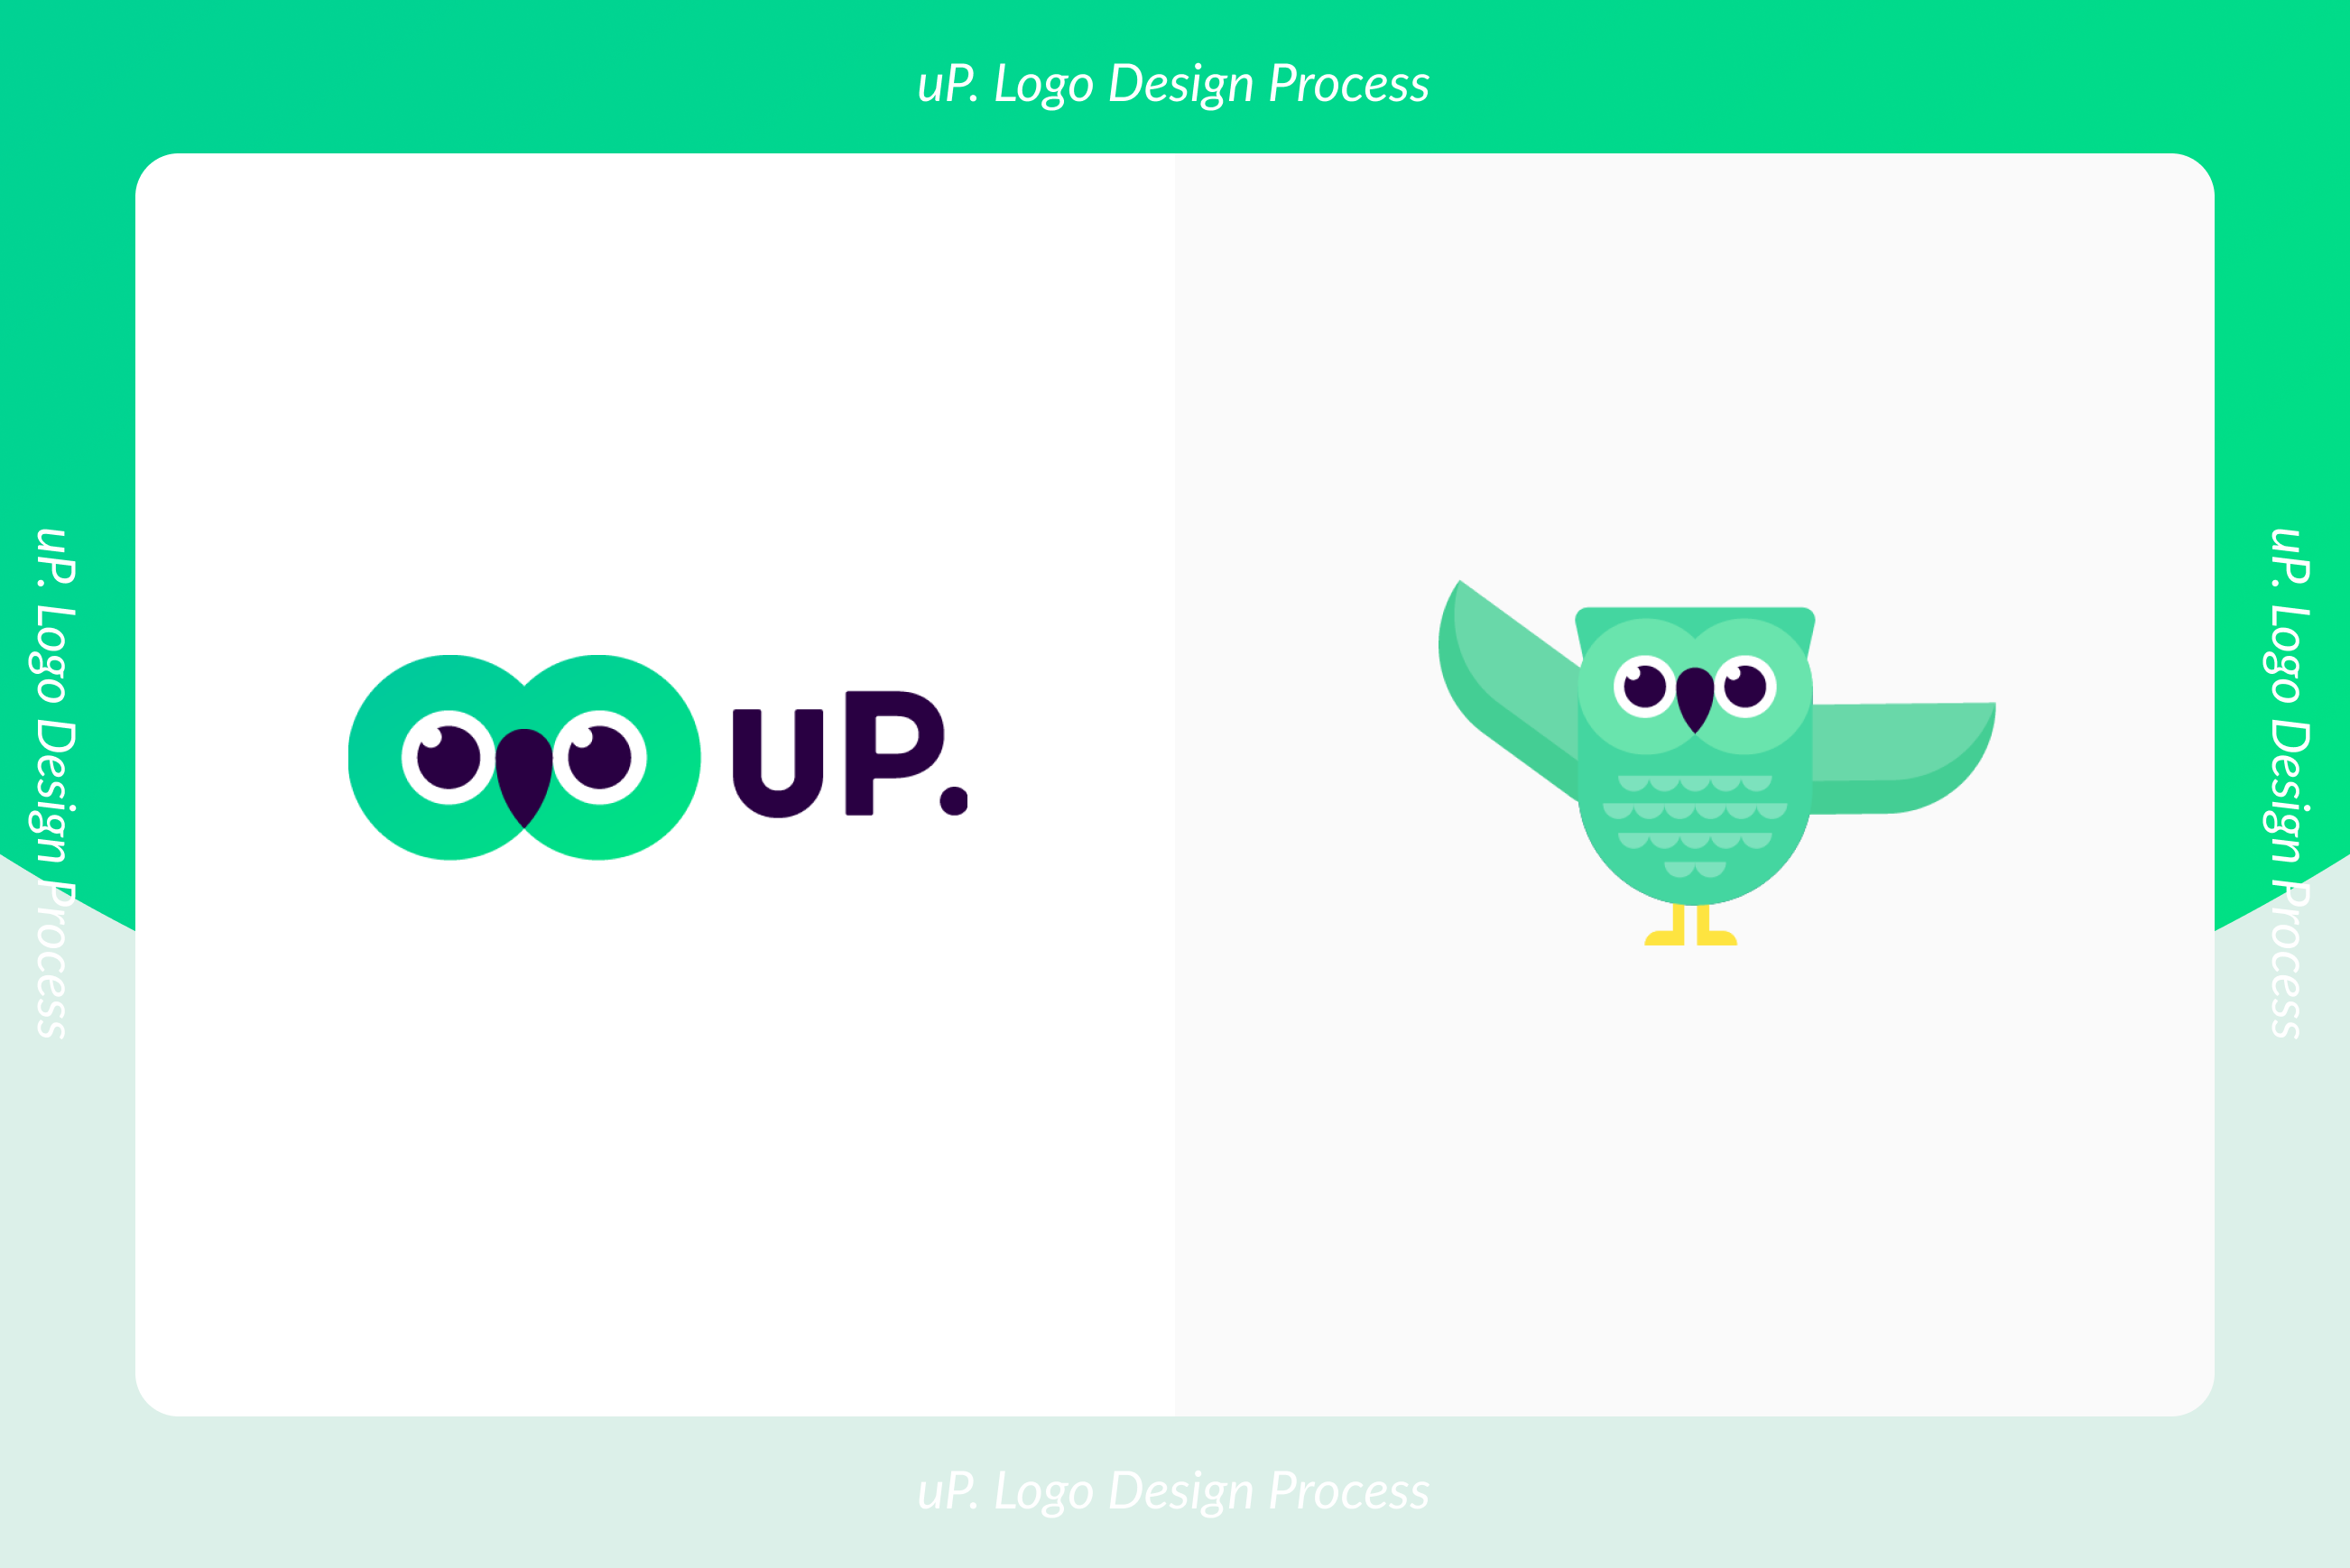 スピードと納得感を両立させる、uP.のロゴデザインプロセス | Cocoda